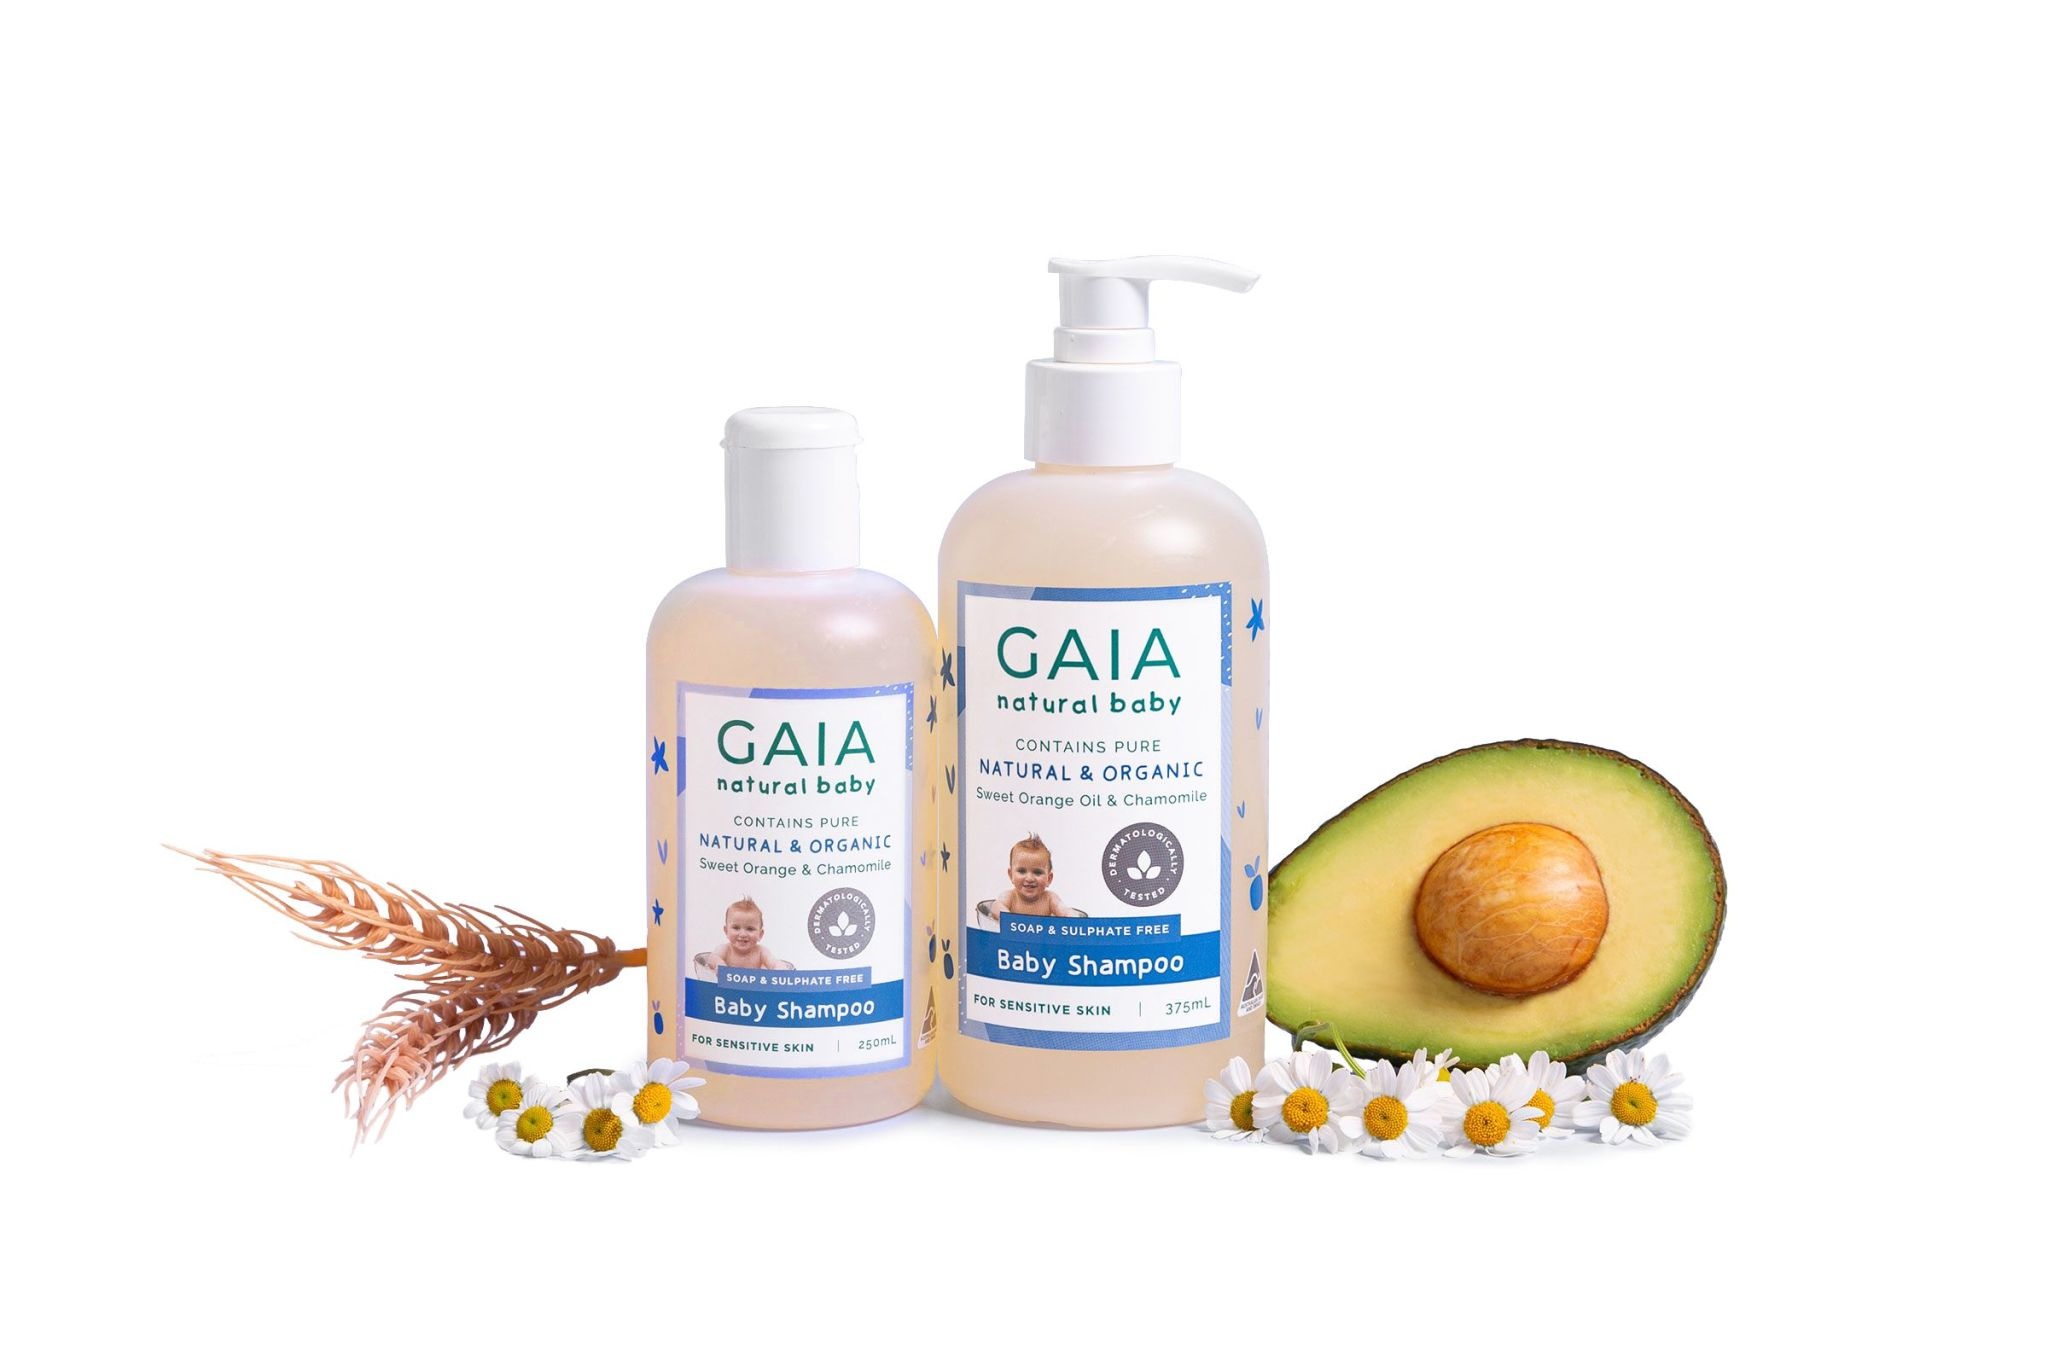 Gaia Gaia Baby Shampoo 375ml